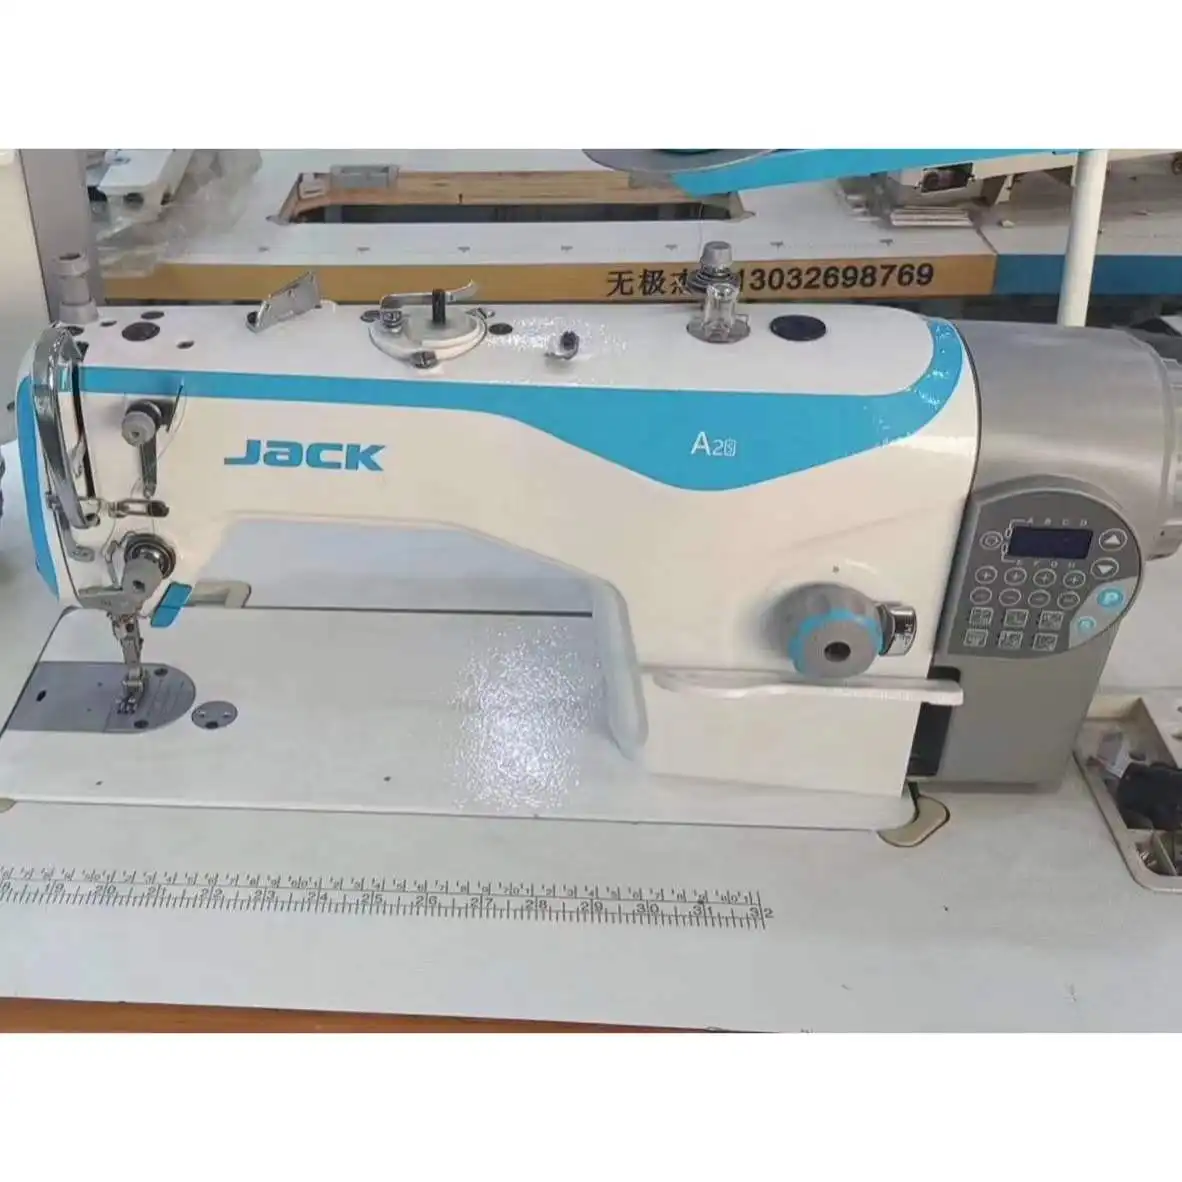 Онлайн Горячая Распродажа китайского бренда Jack A2S одежда промышленное шитье плоская кровать компьютеризированная б/у швейная машина с интеллектуальной панелью